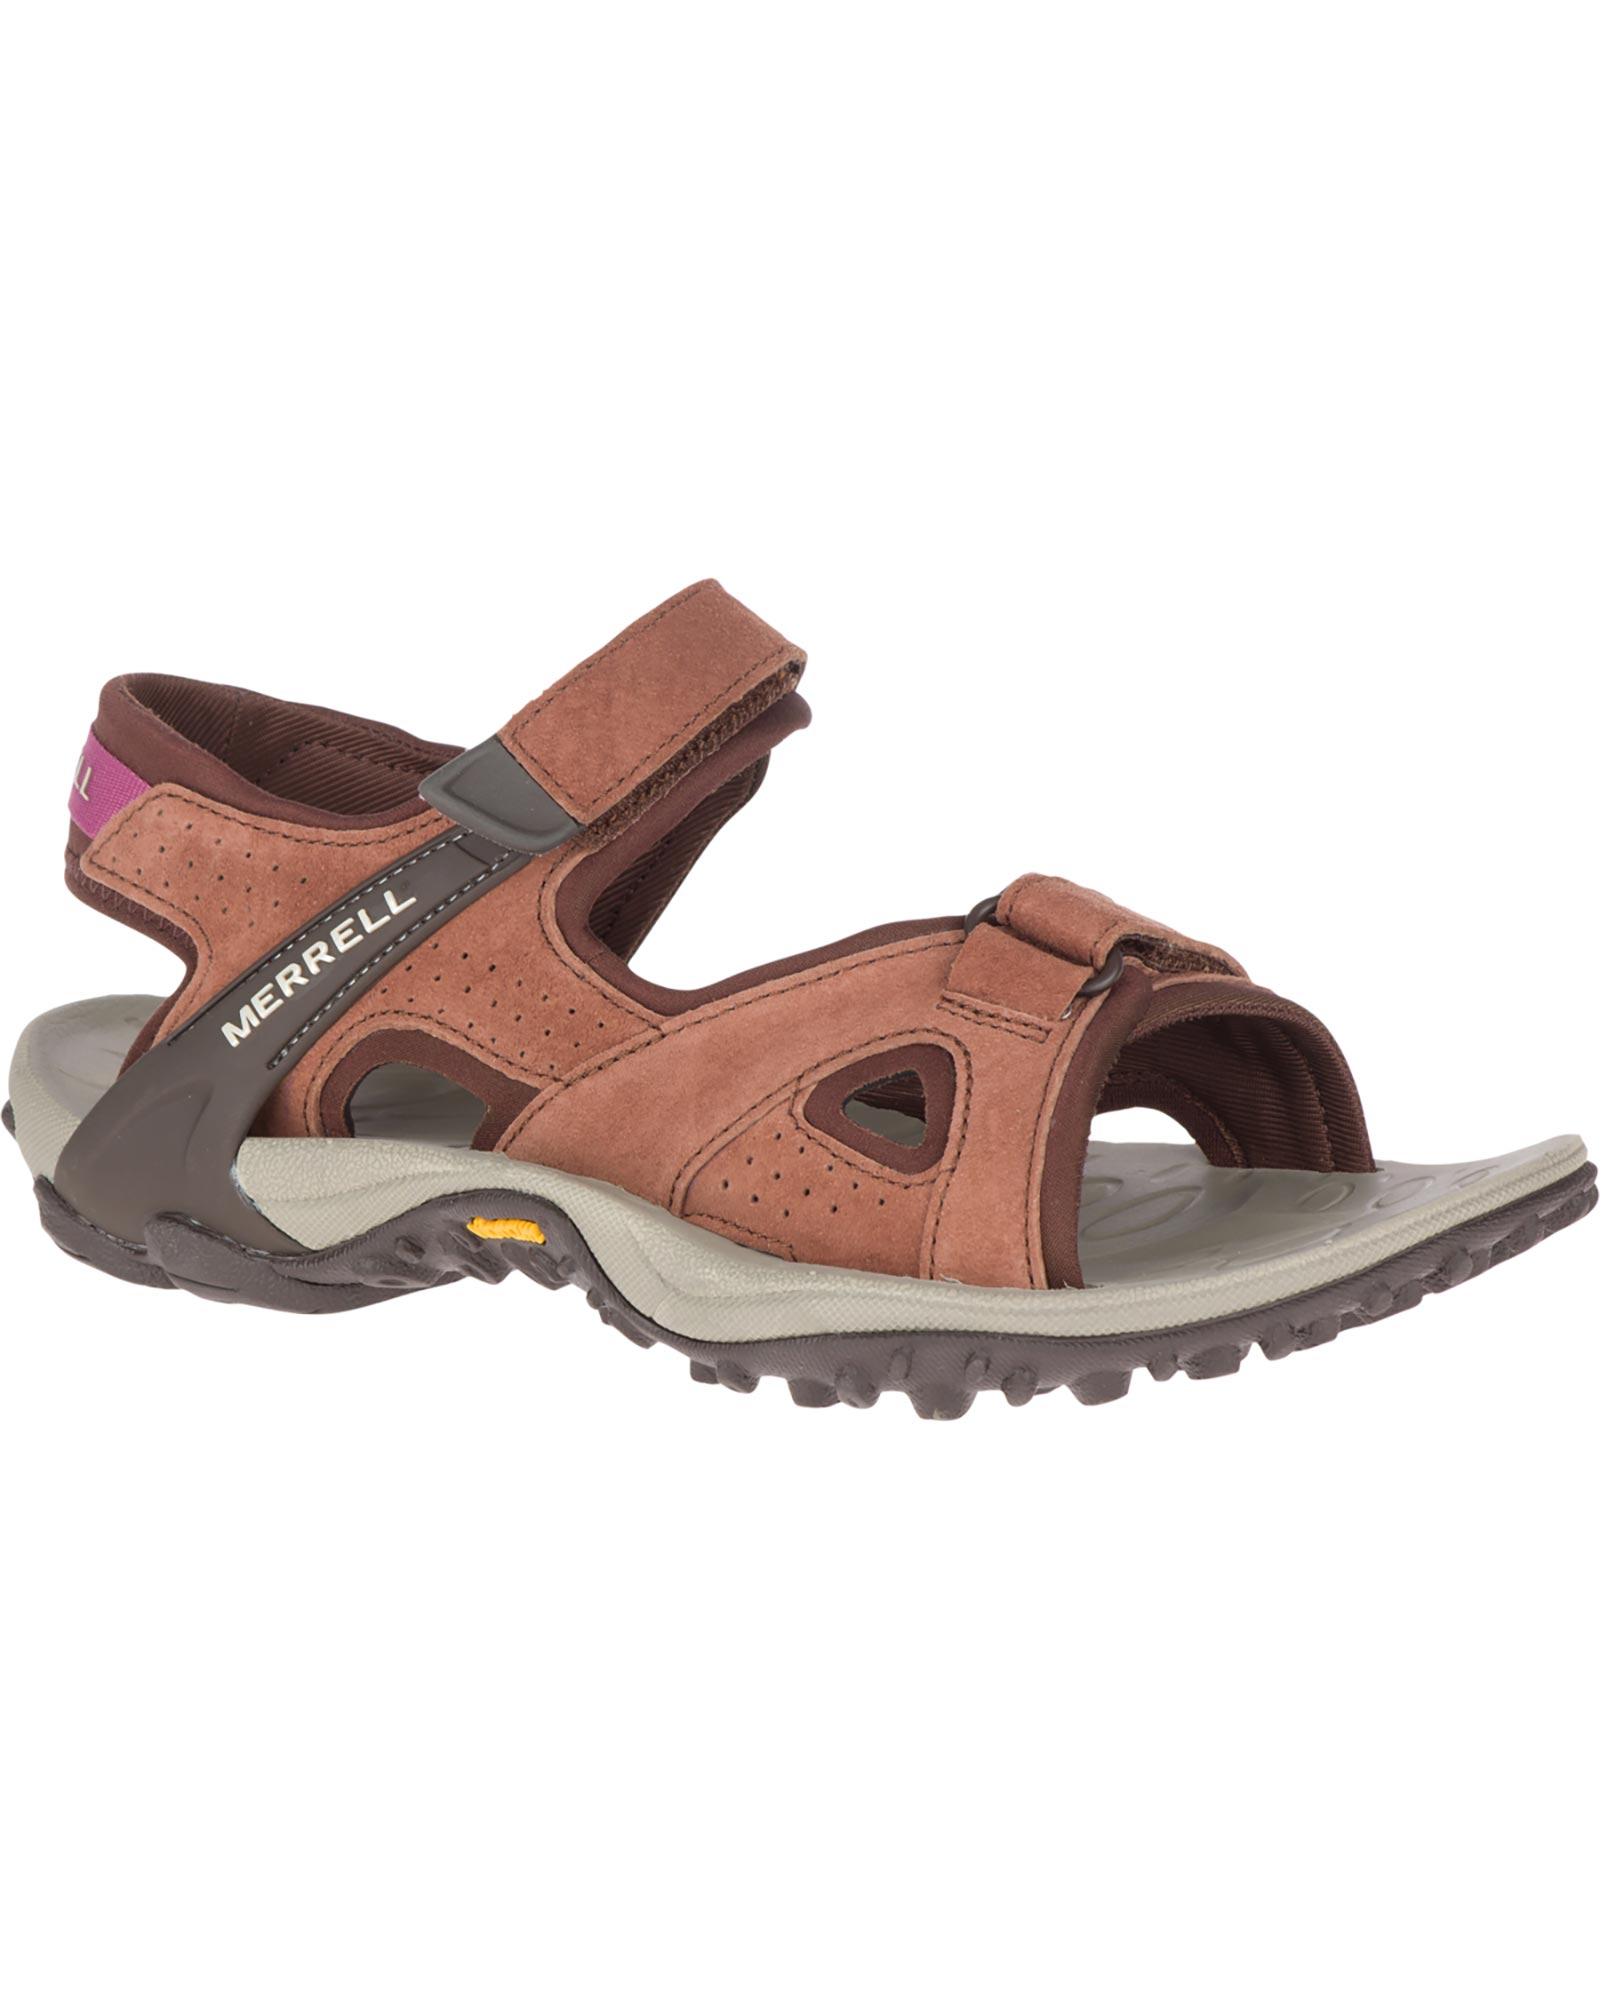 Merrell Kahuna 4 Strap Women’s Sandals - Choc UK 5